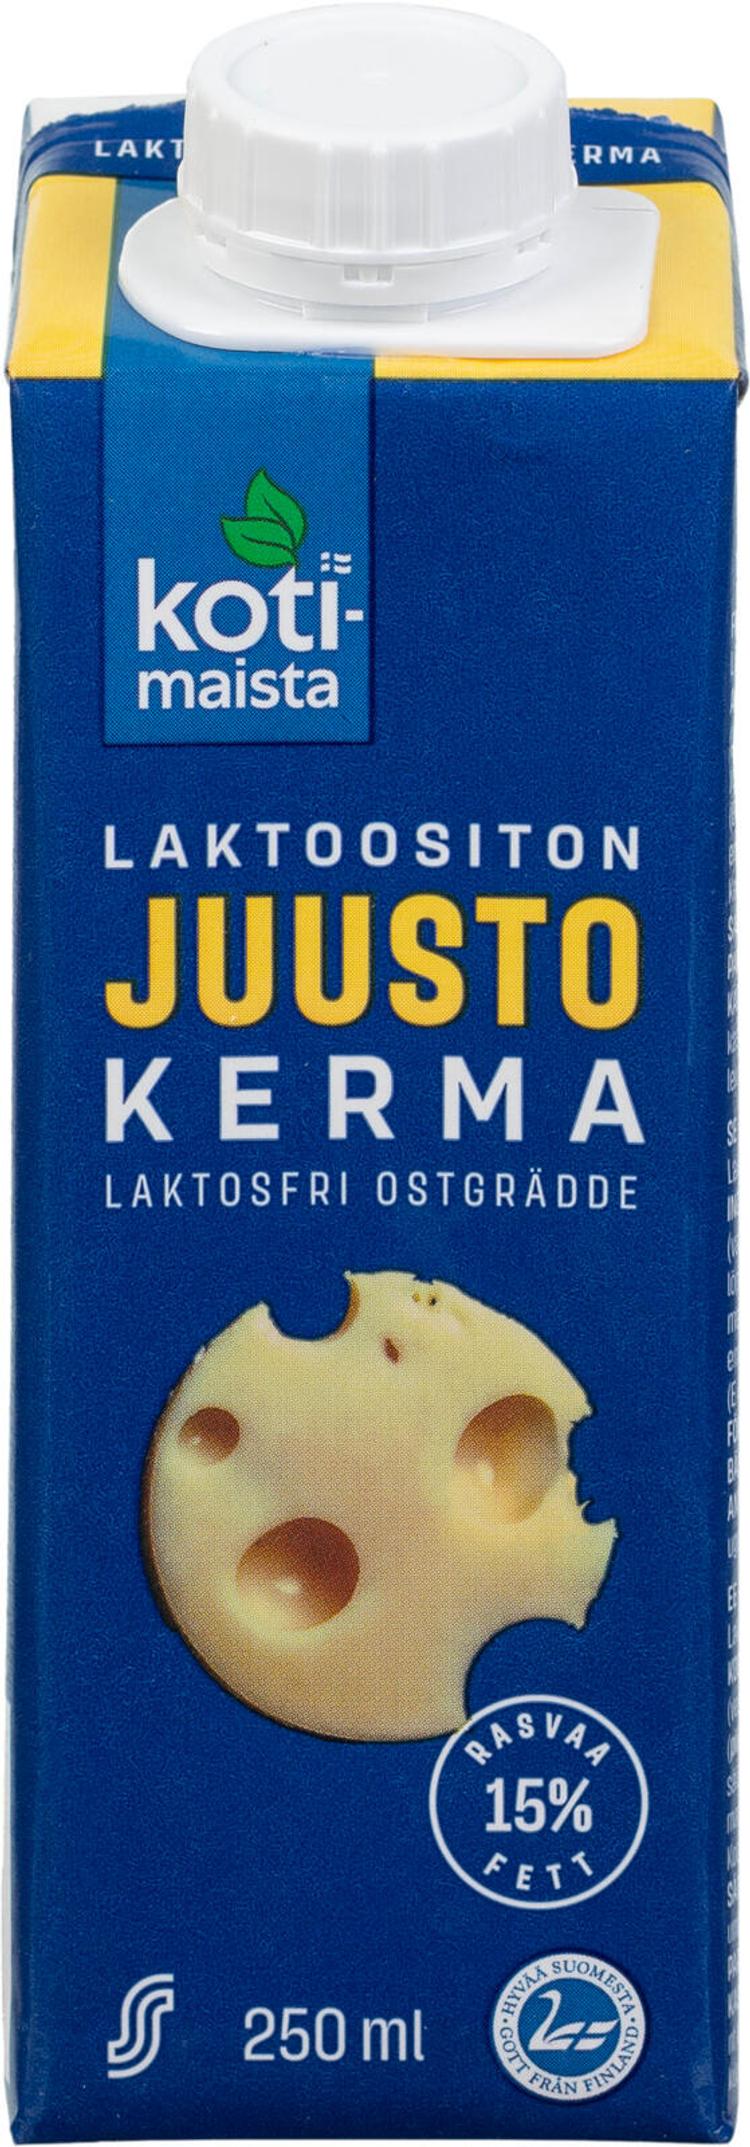 Kotimaista laktoositon juustolla maustettu ruokakerma 15% 250ml